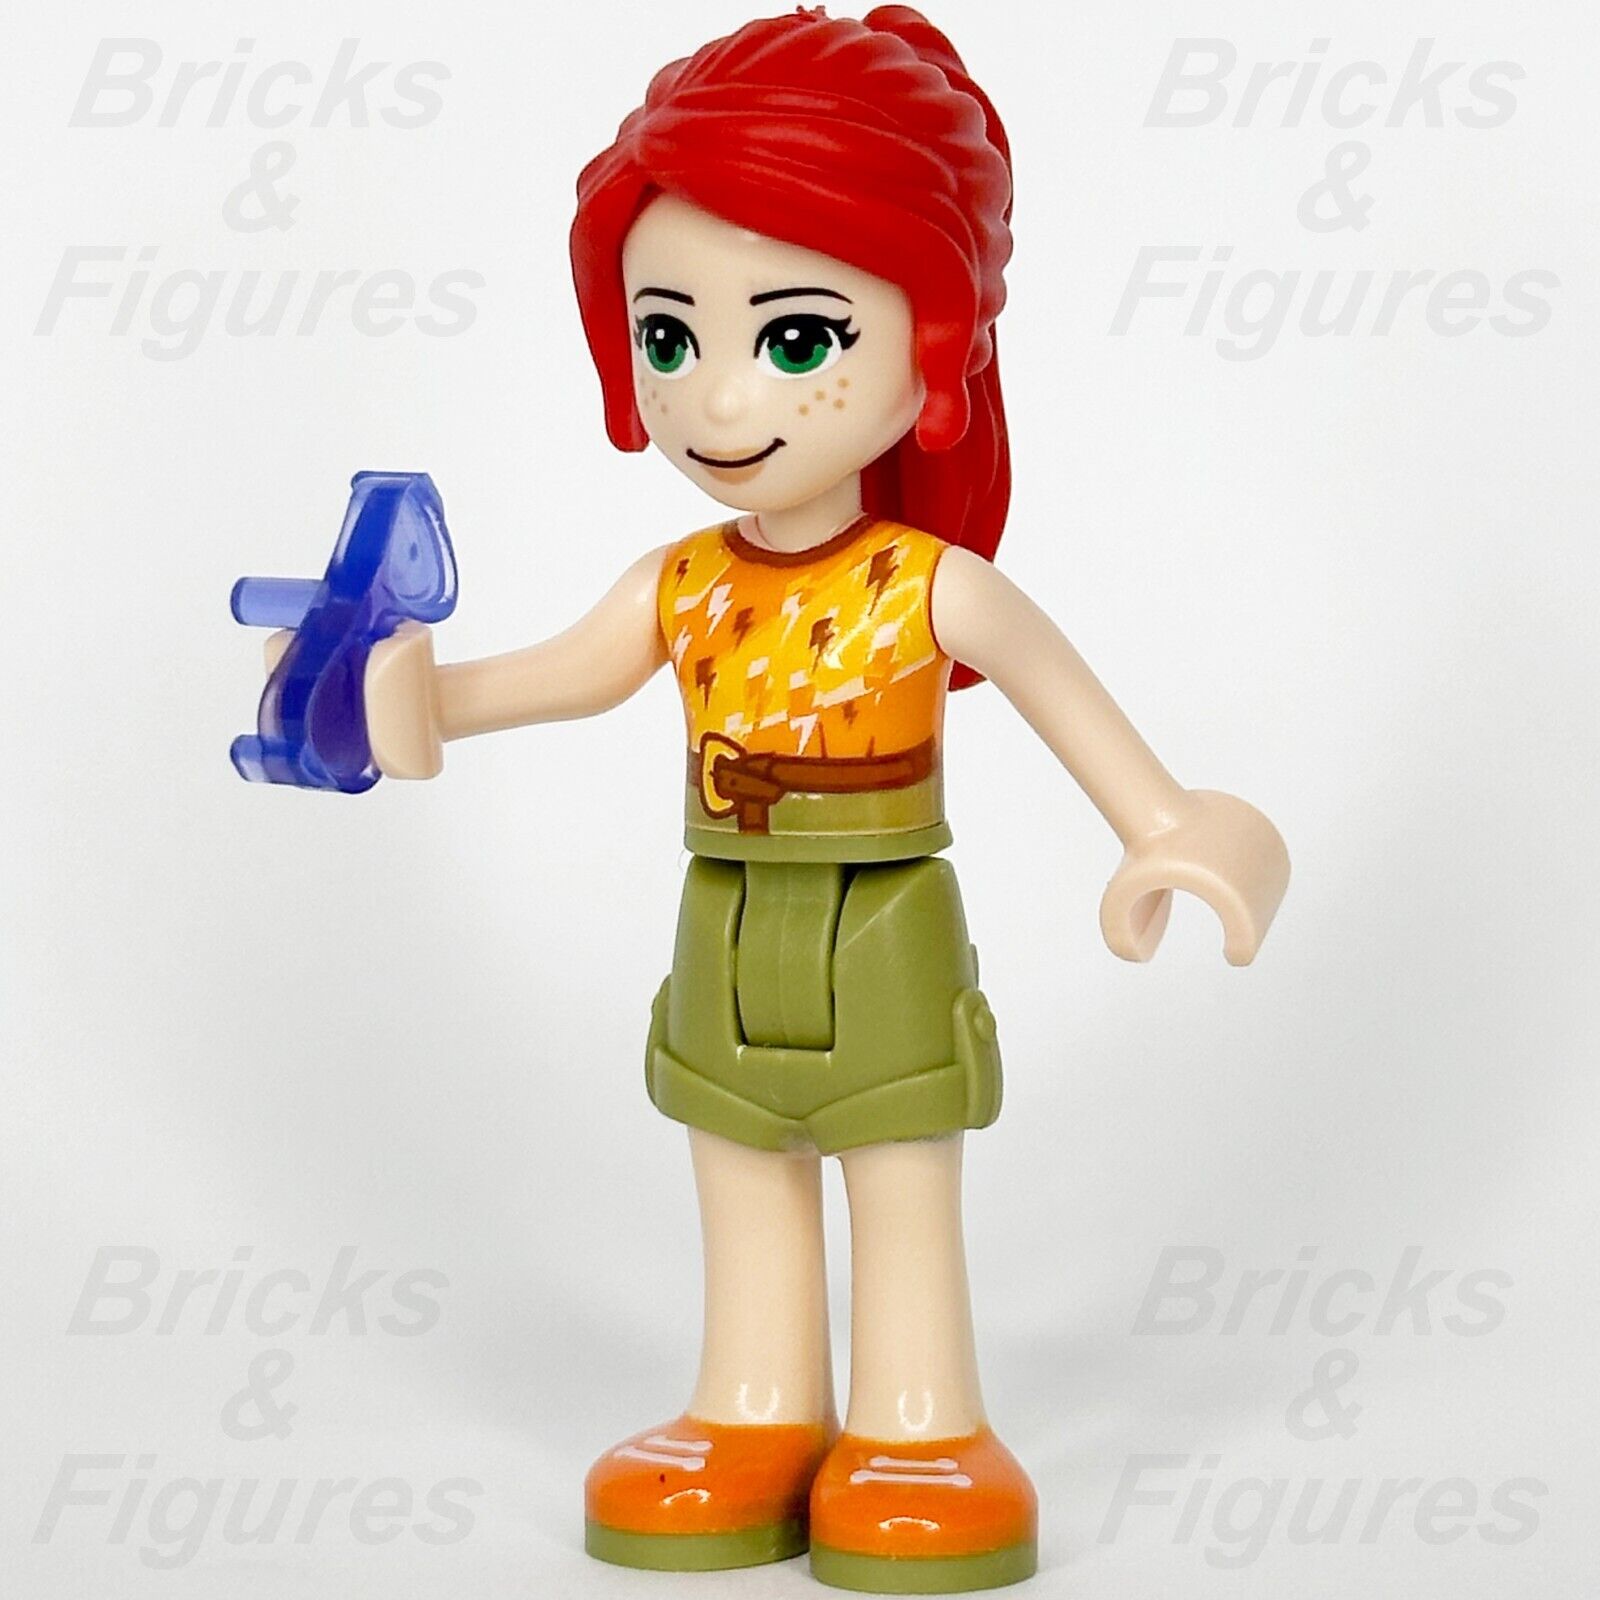 LEGO® Friends Minifigures, Shop Online